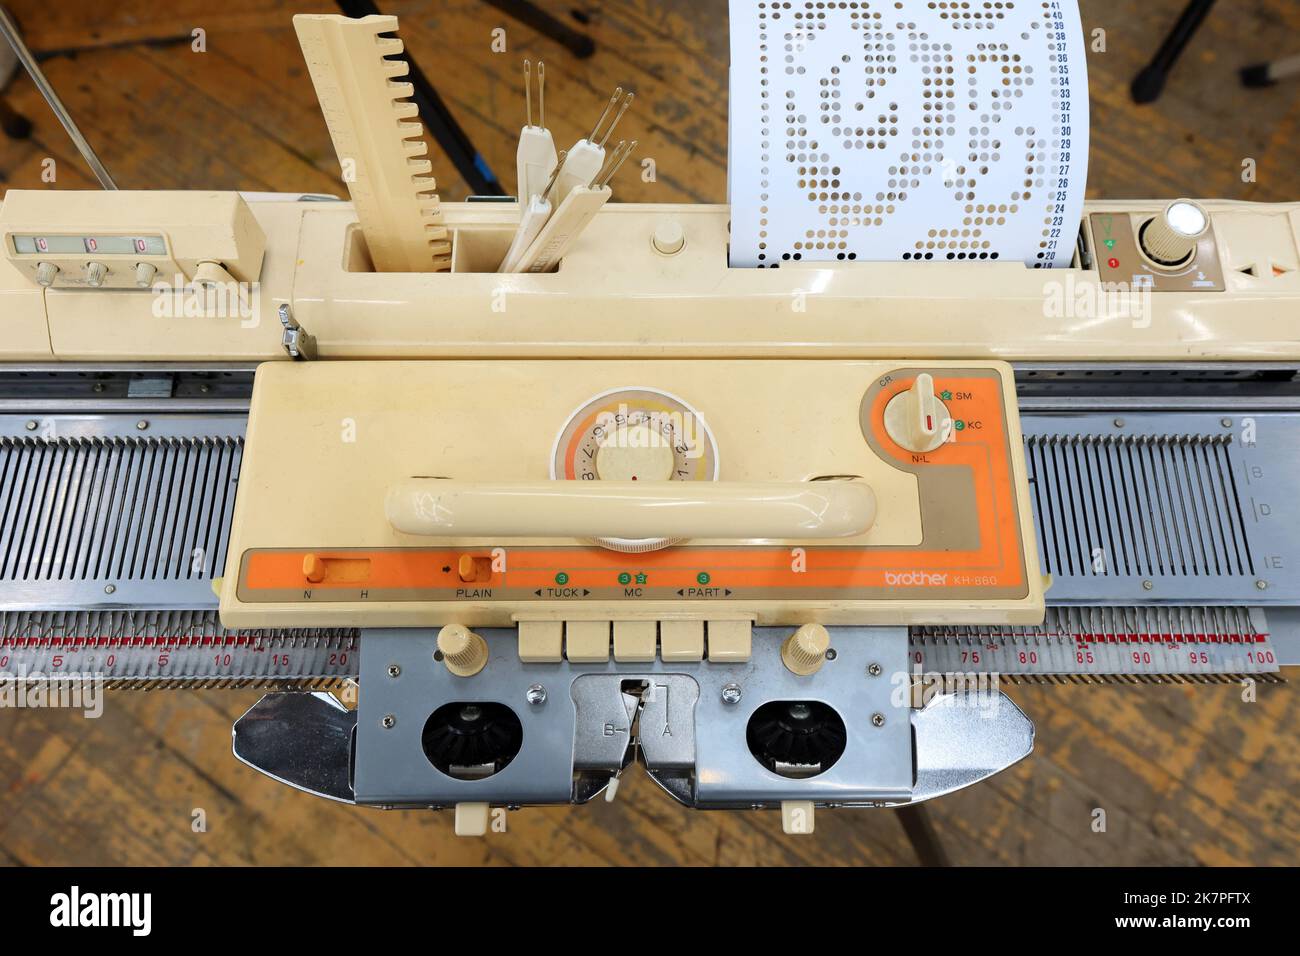 Une machine à tricoter Brother KH860 avec compteur de rangs, carte perforatrice, chariot et plaque de plongeur fixée sur un lit d'aiguilles à tricoter. Banque D'Images